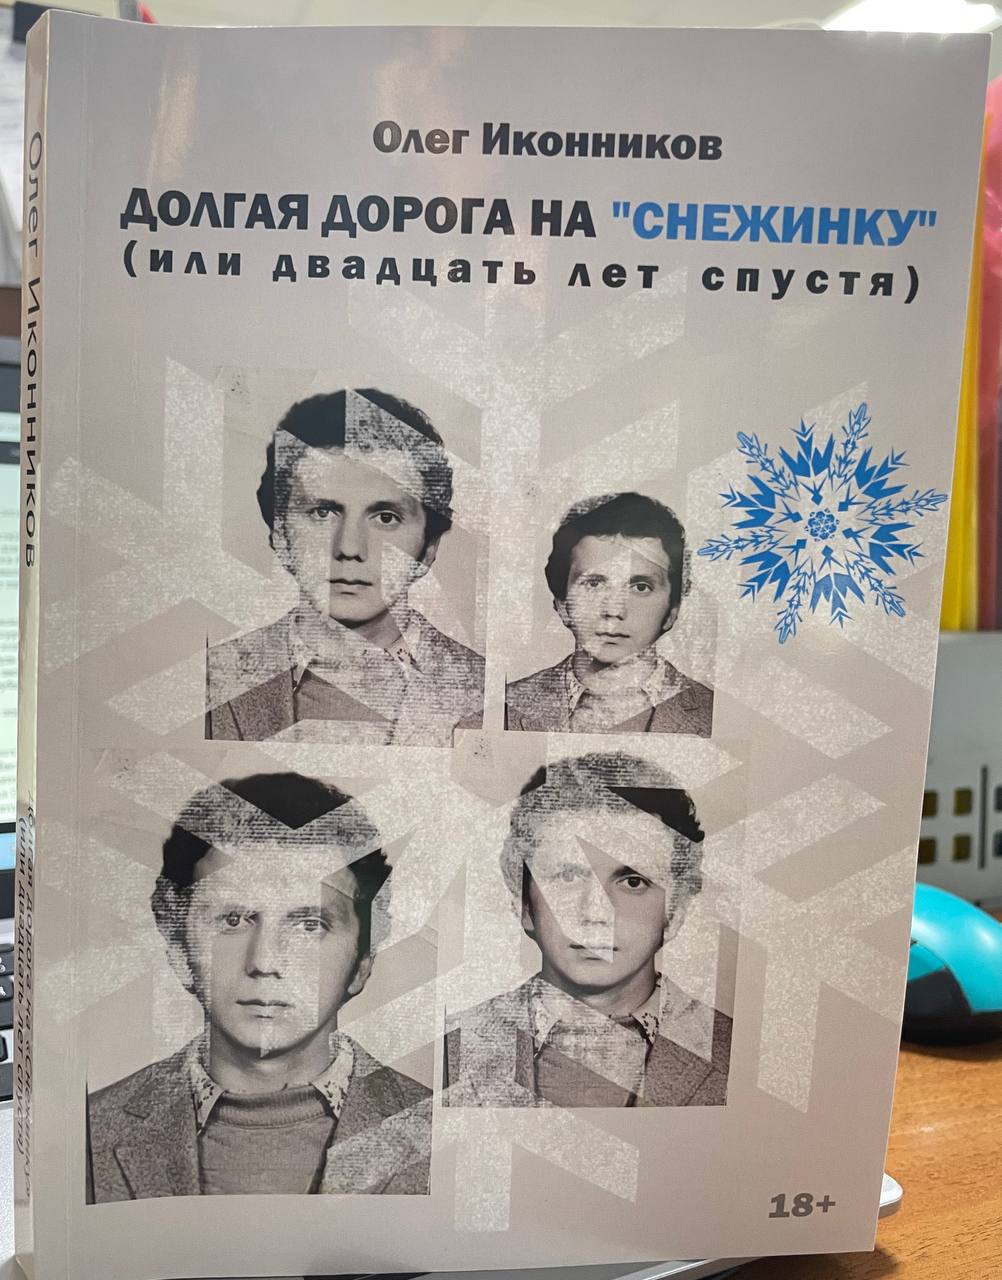 В продажу поступила новая книга бывшего бандита Олега Иконникова